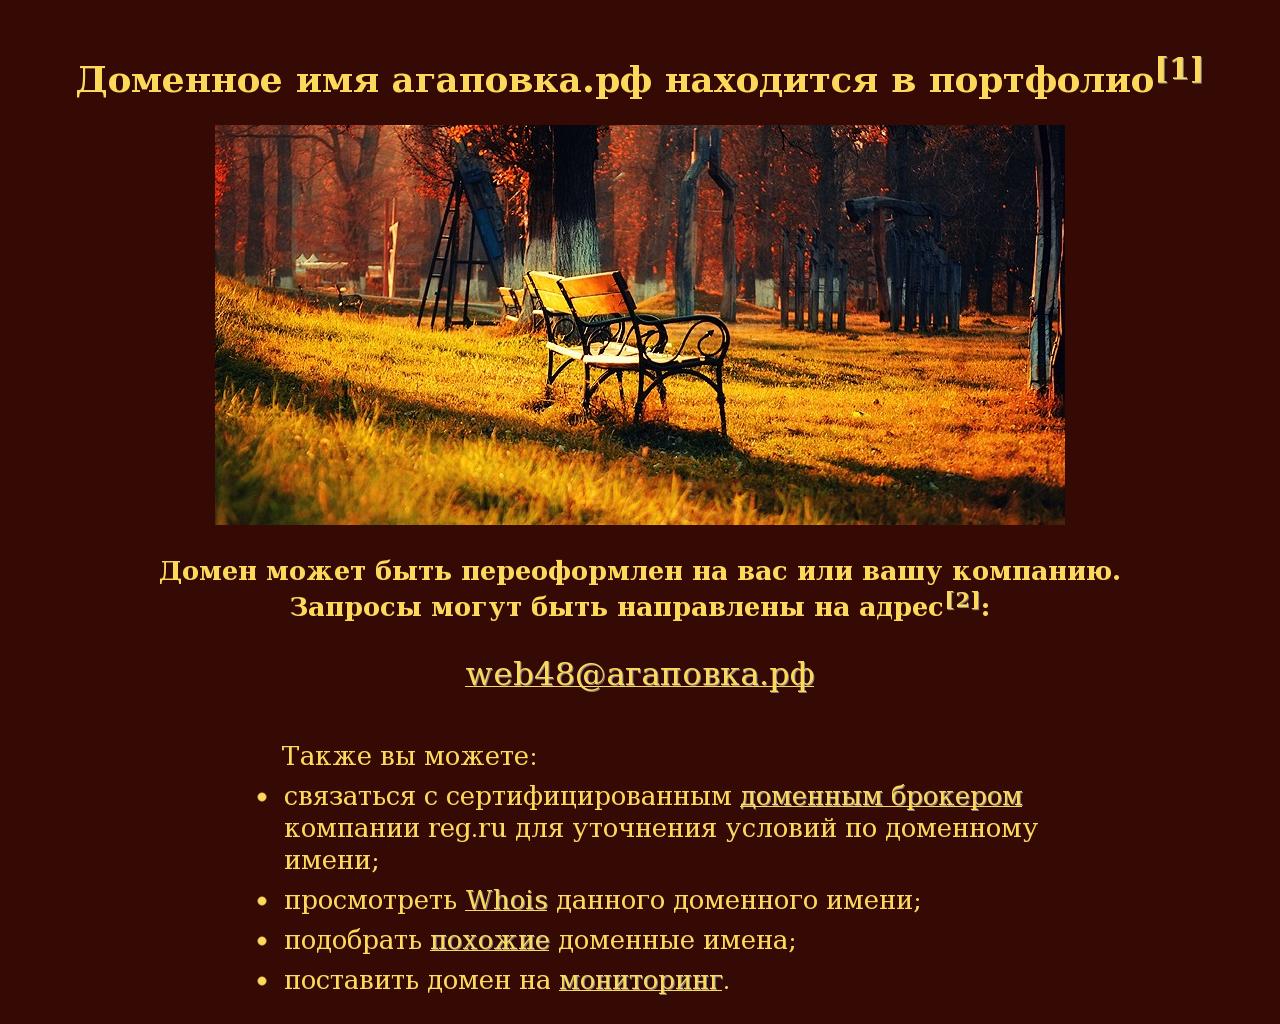 Изображение сайта агаповка.рф в разрешении 1280x1024